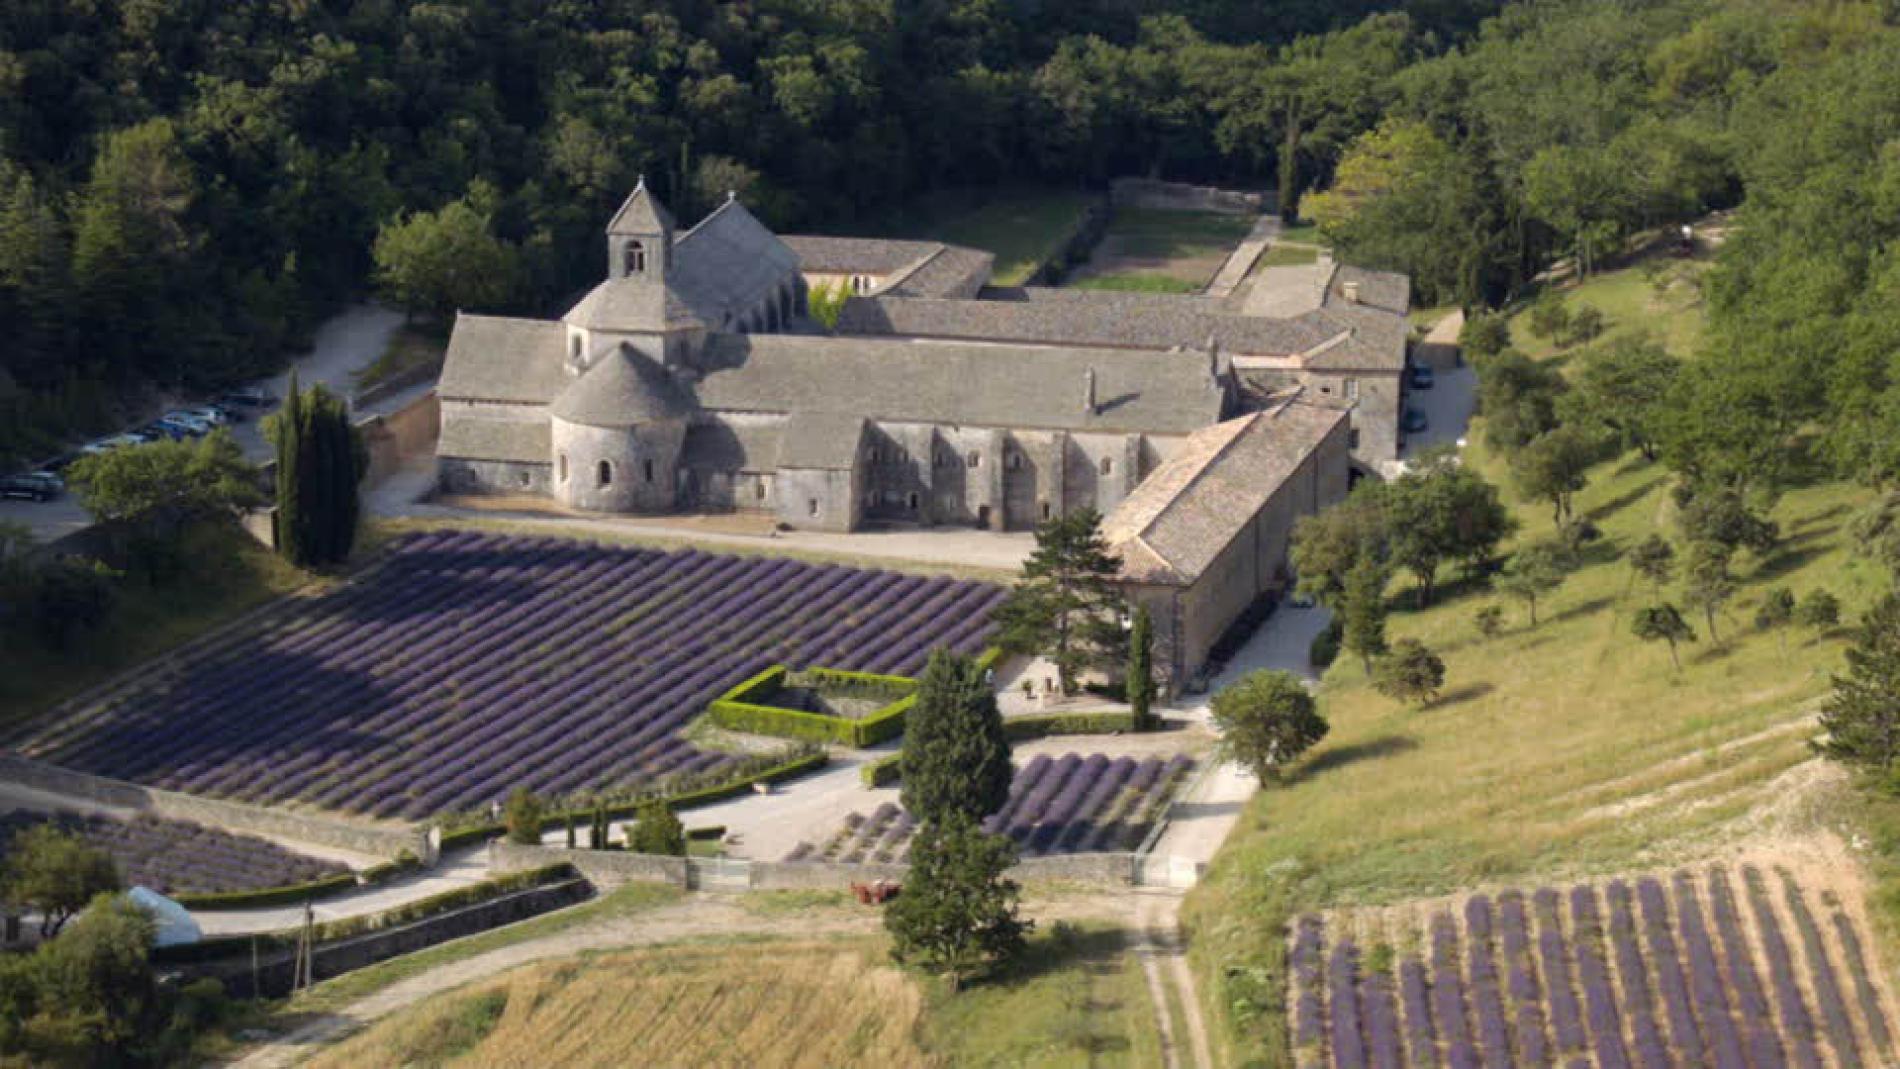 Notre-Dame de Sénanque abbey and its lavender fields